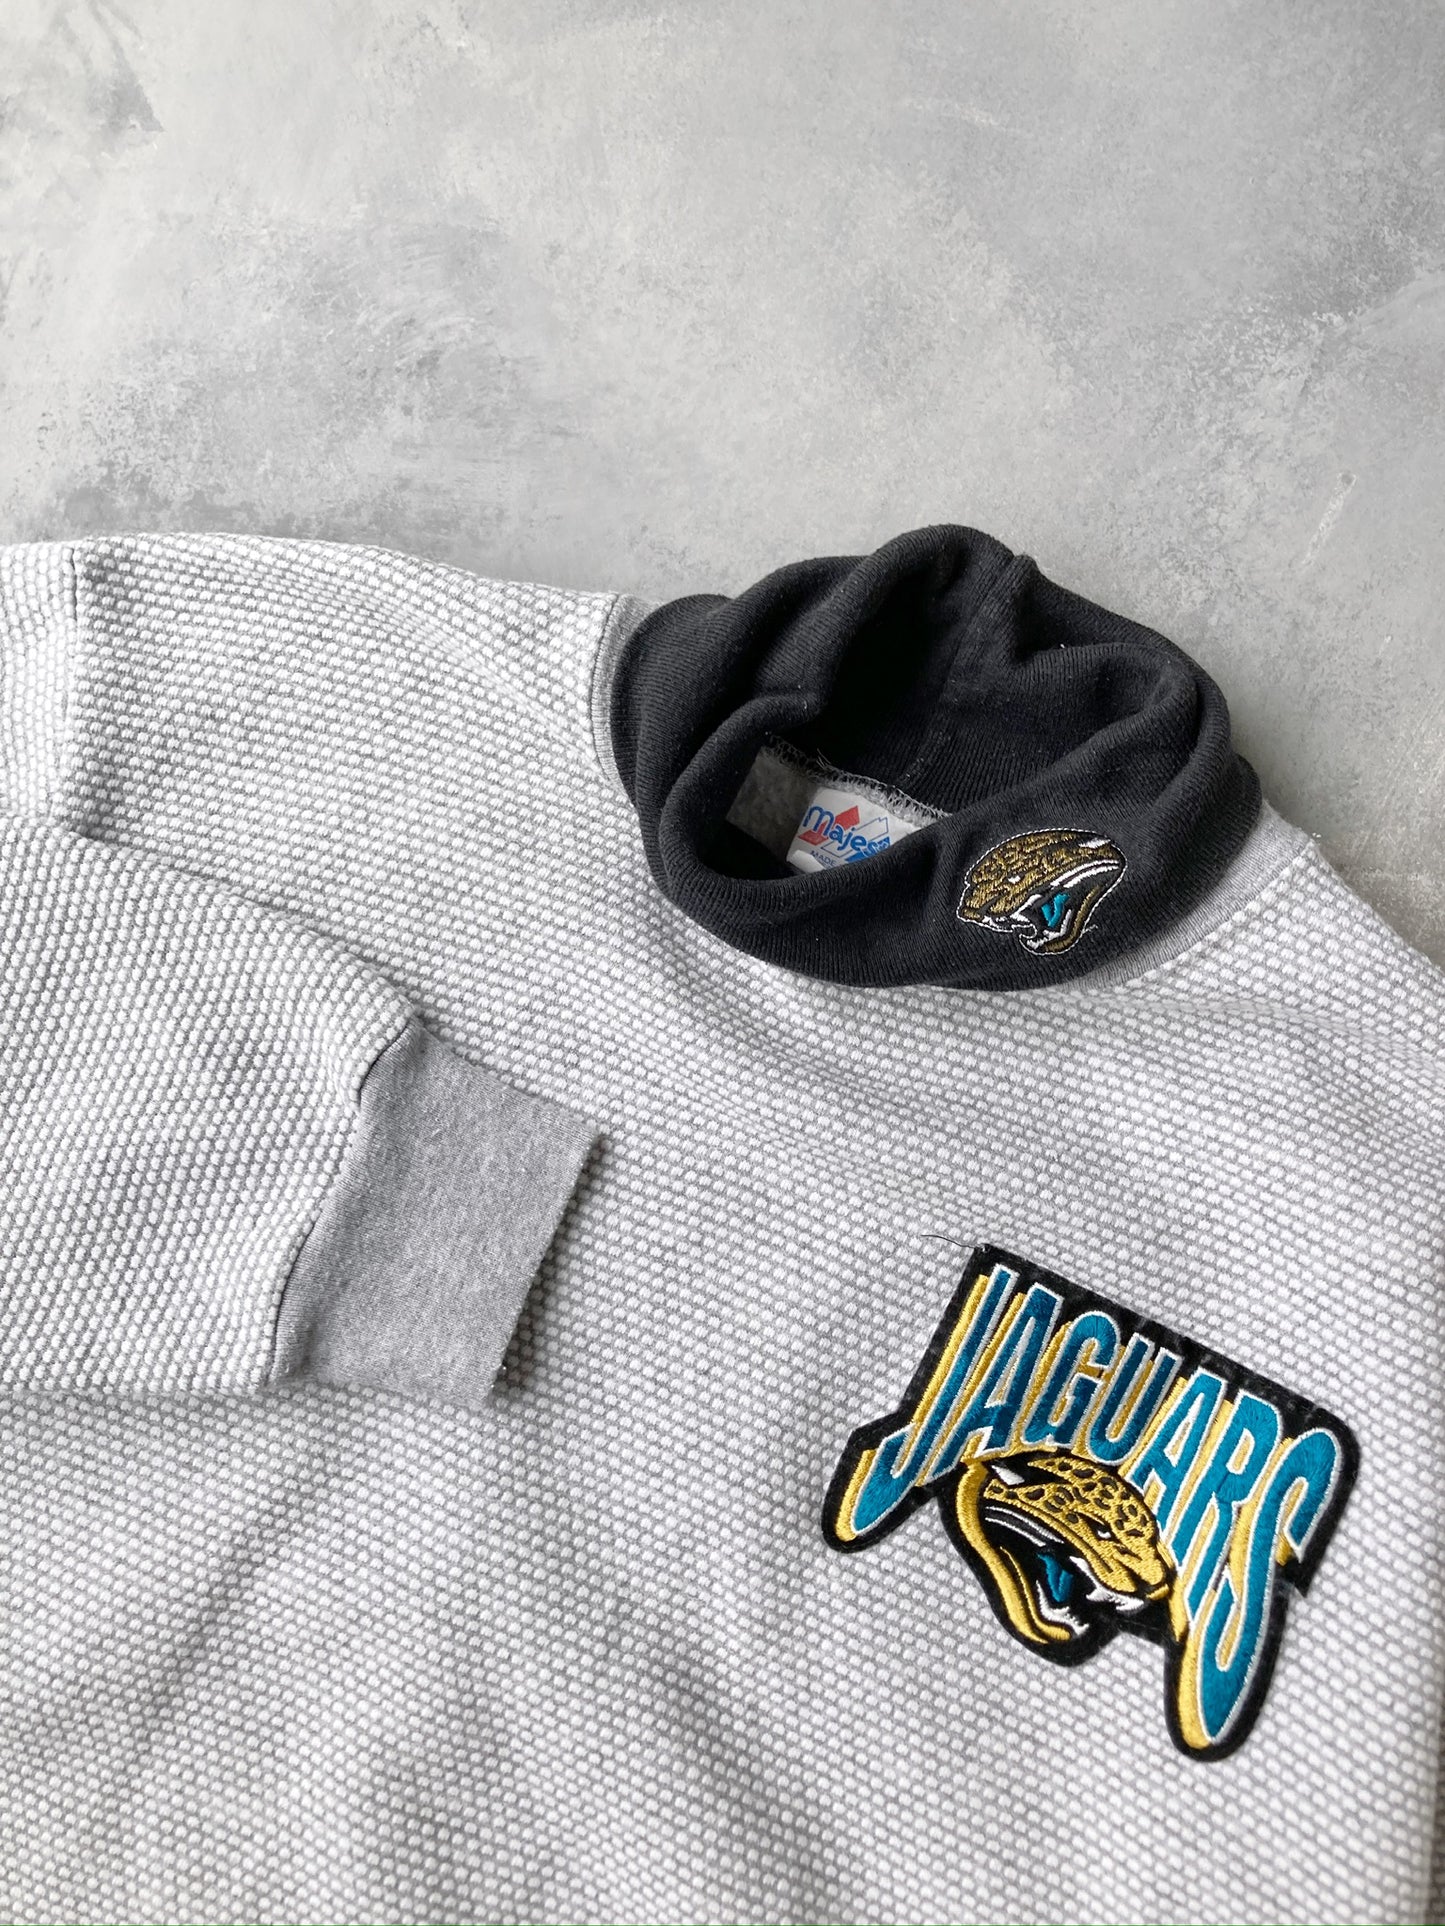 Jacksonville Jaguars Turtleneck Sweatshirt 90's - Medium